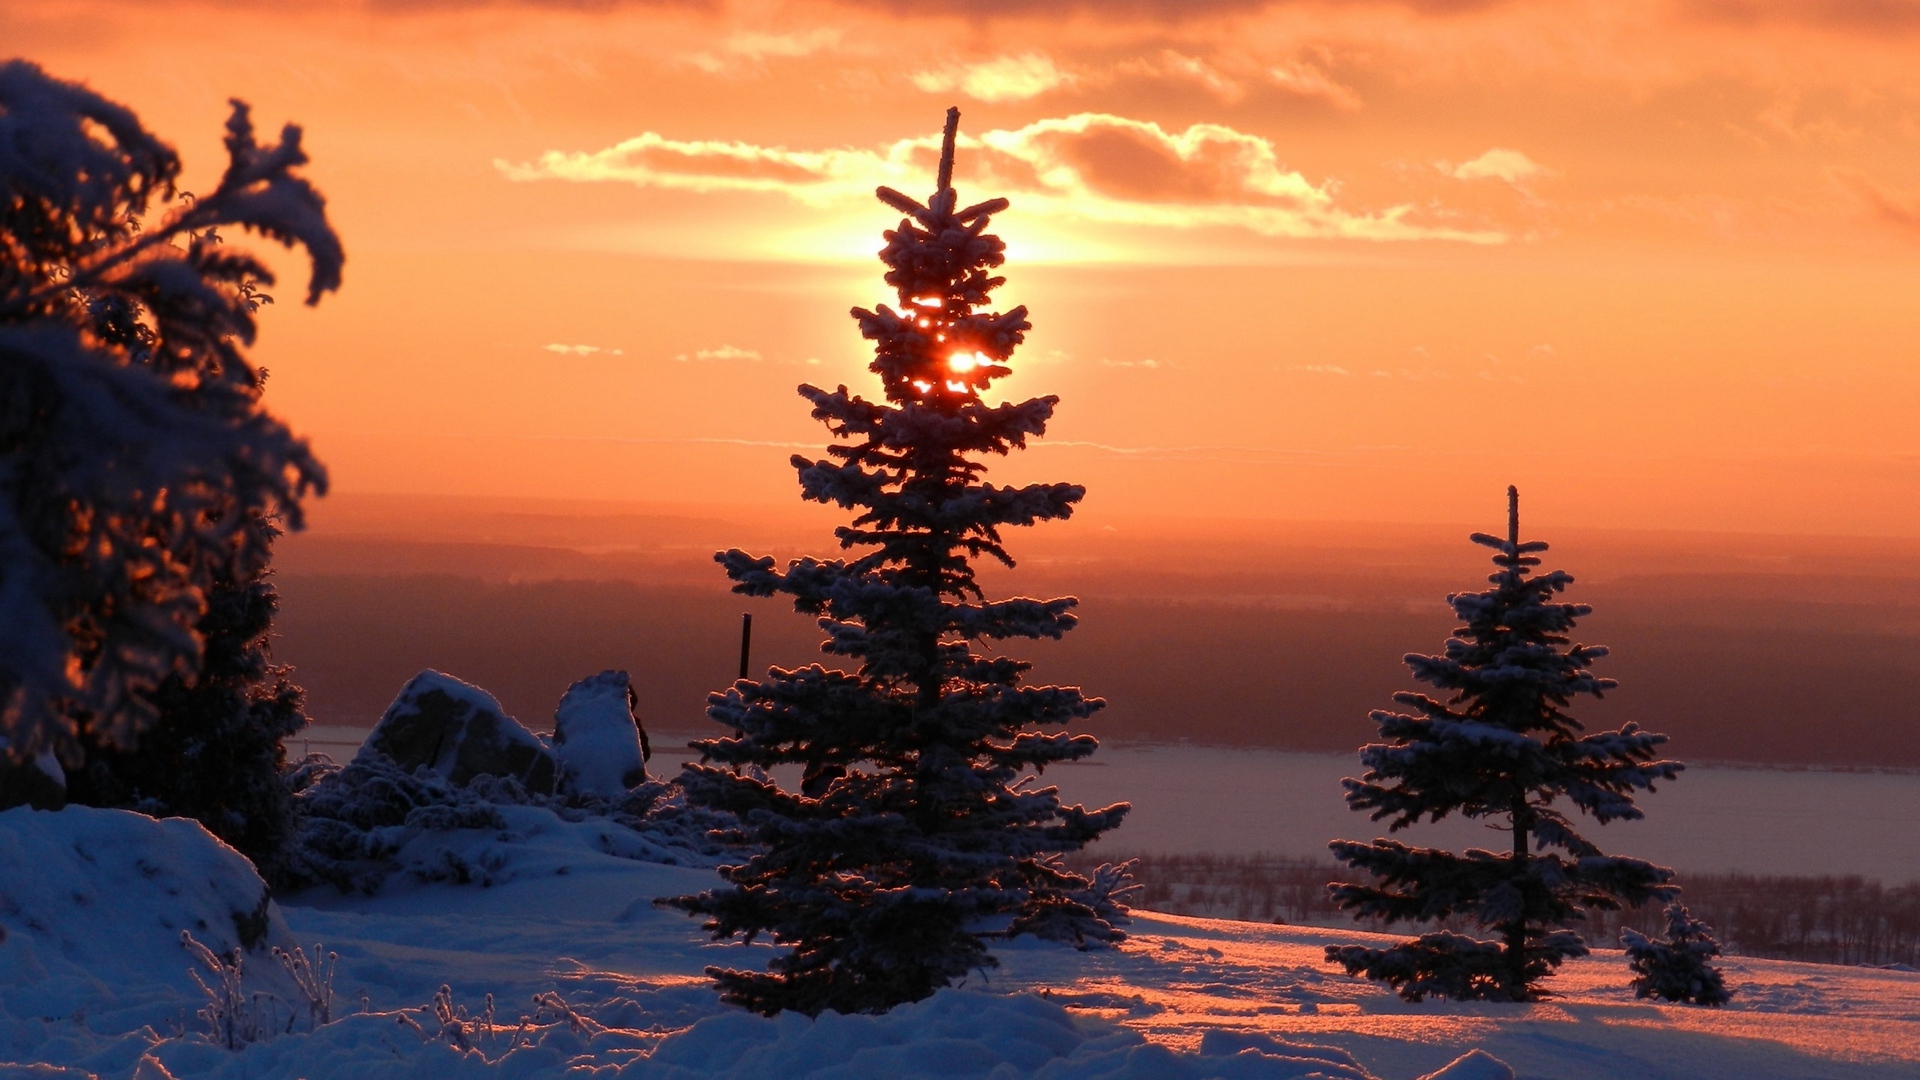 Winter Sunset And Trees - Fir Tree Snow Sunset - HD Wallpaper 